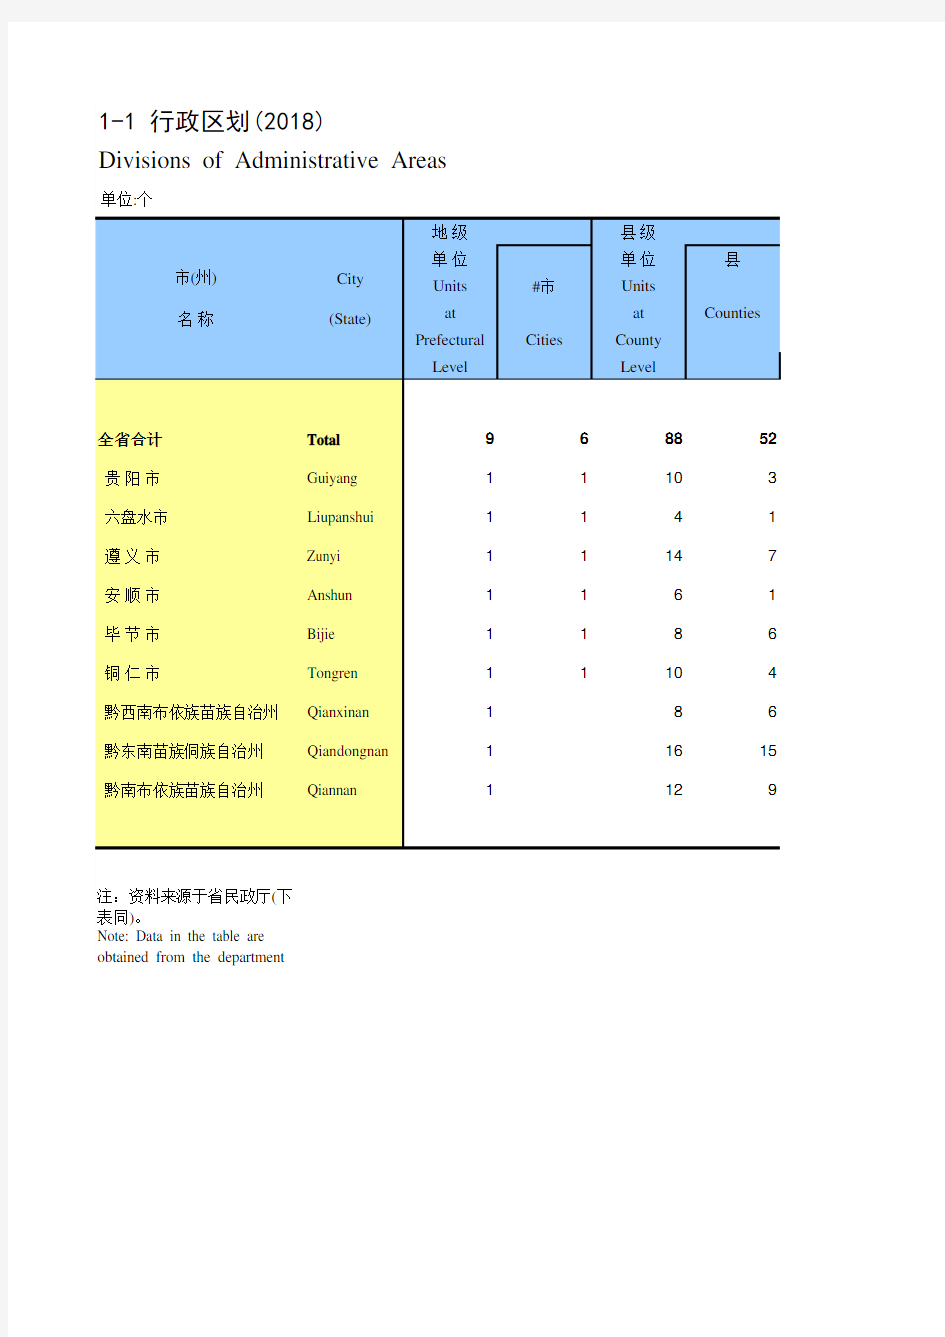 贵州统计年鉴社会经济发展指标数据：1-1 行政区划(2018)